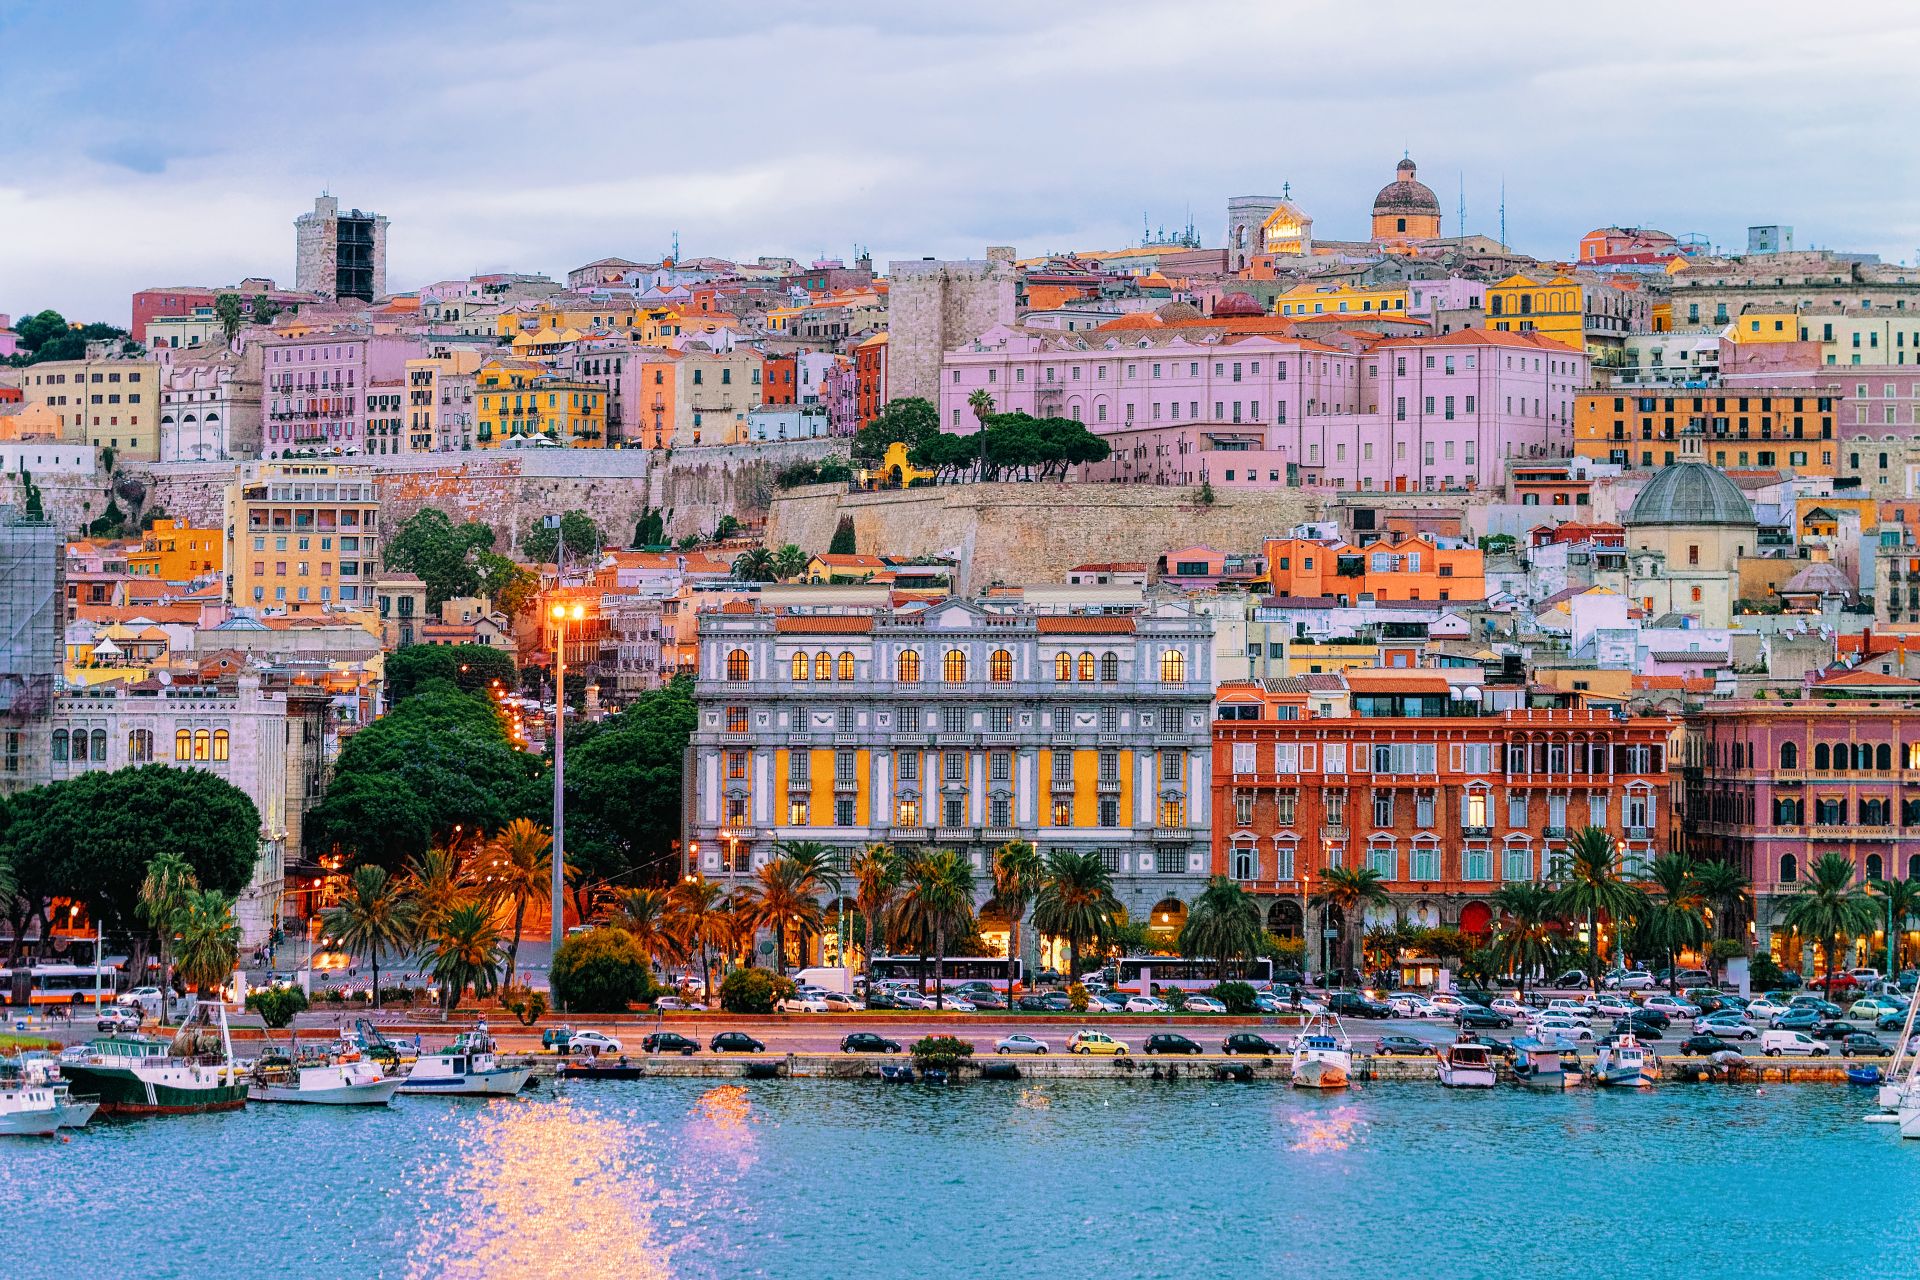 Paesaggio urbano con porto turistico nel Mediterraneo